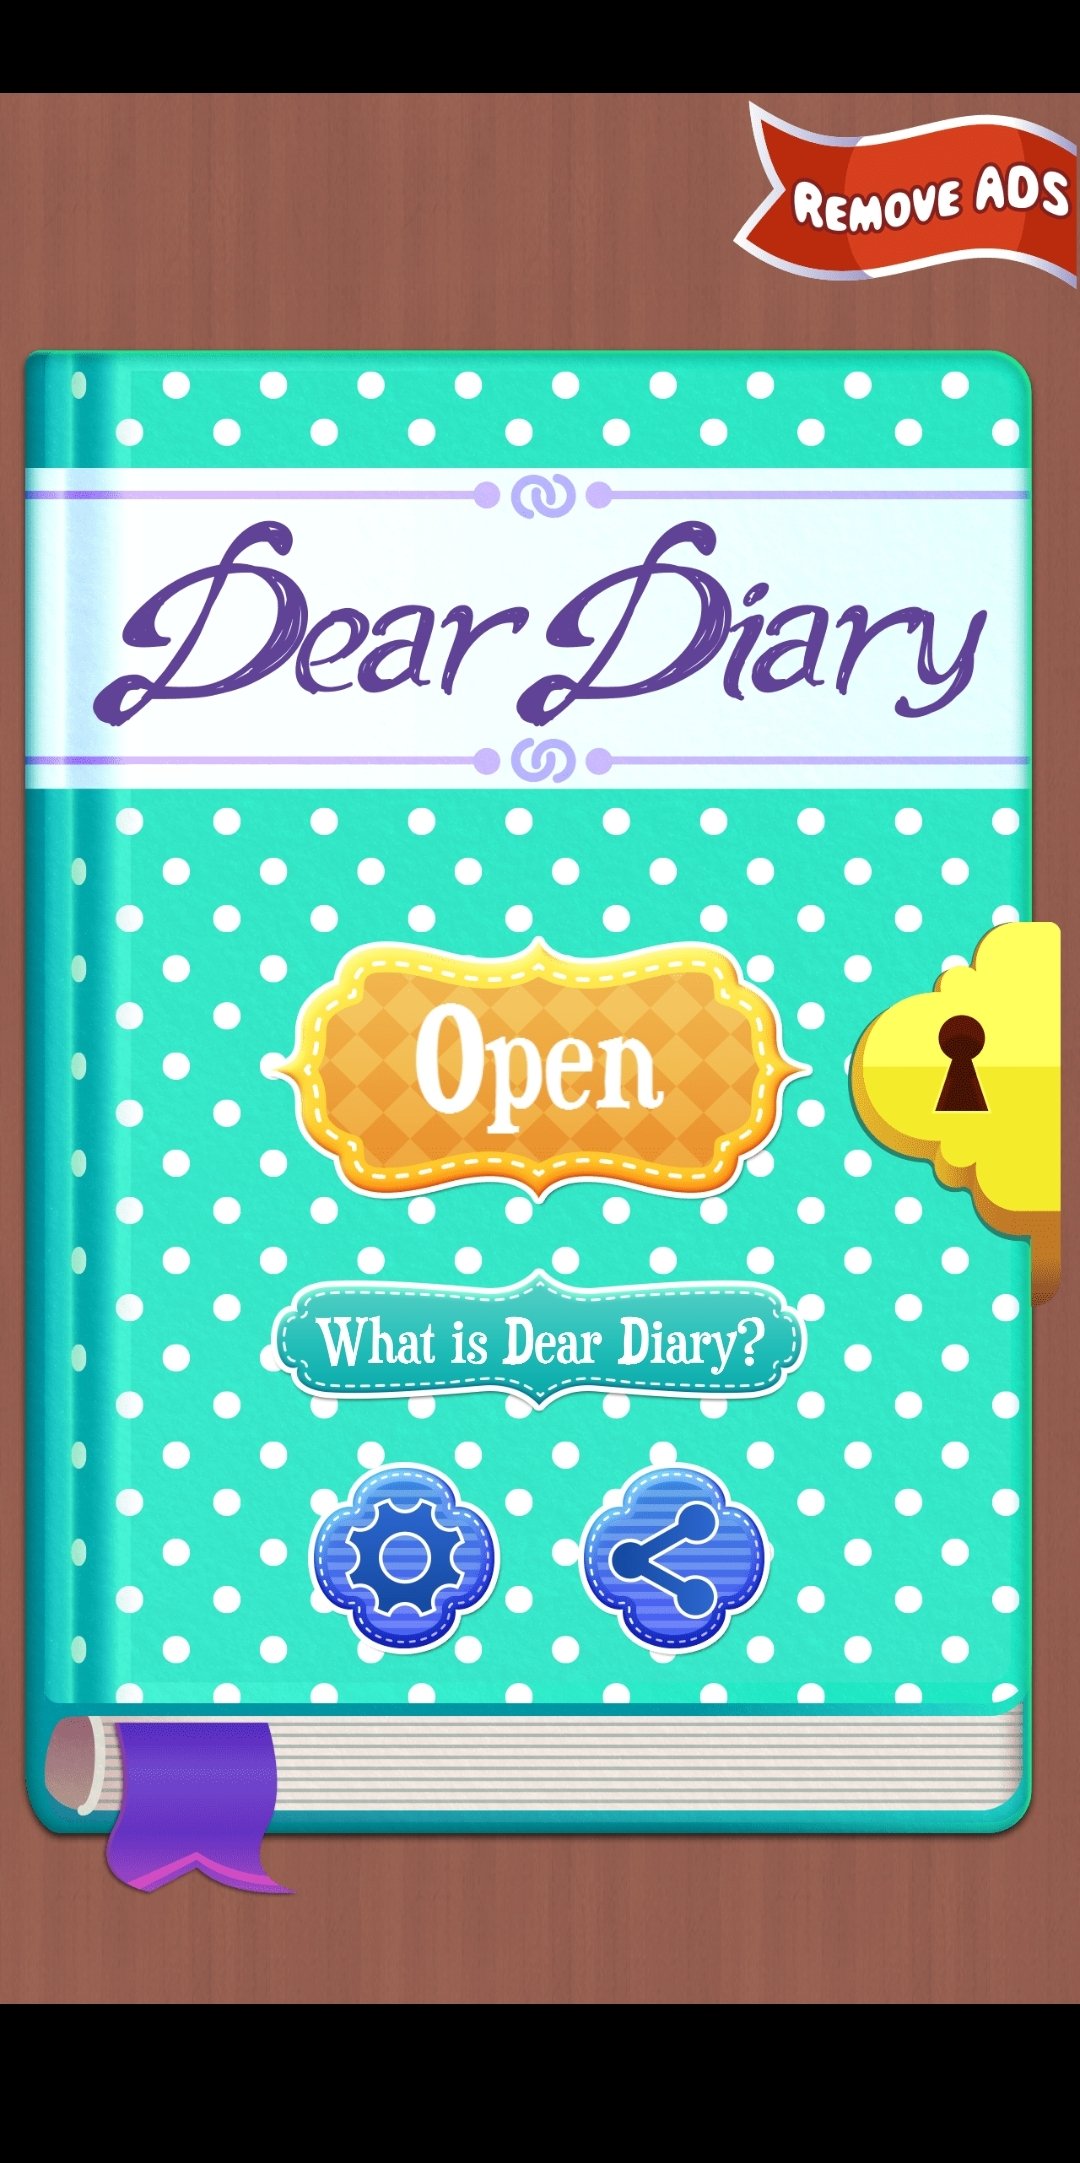 Dear Diary image 8.